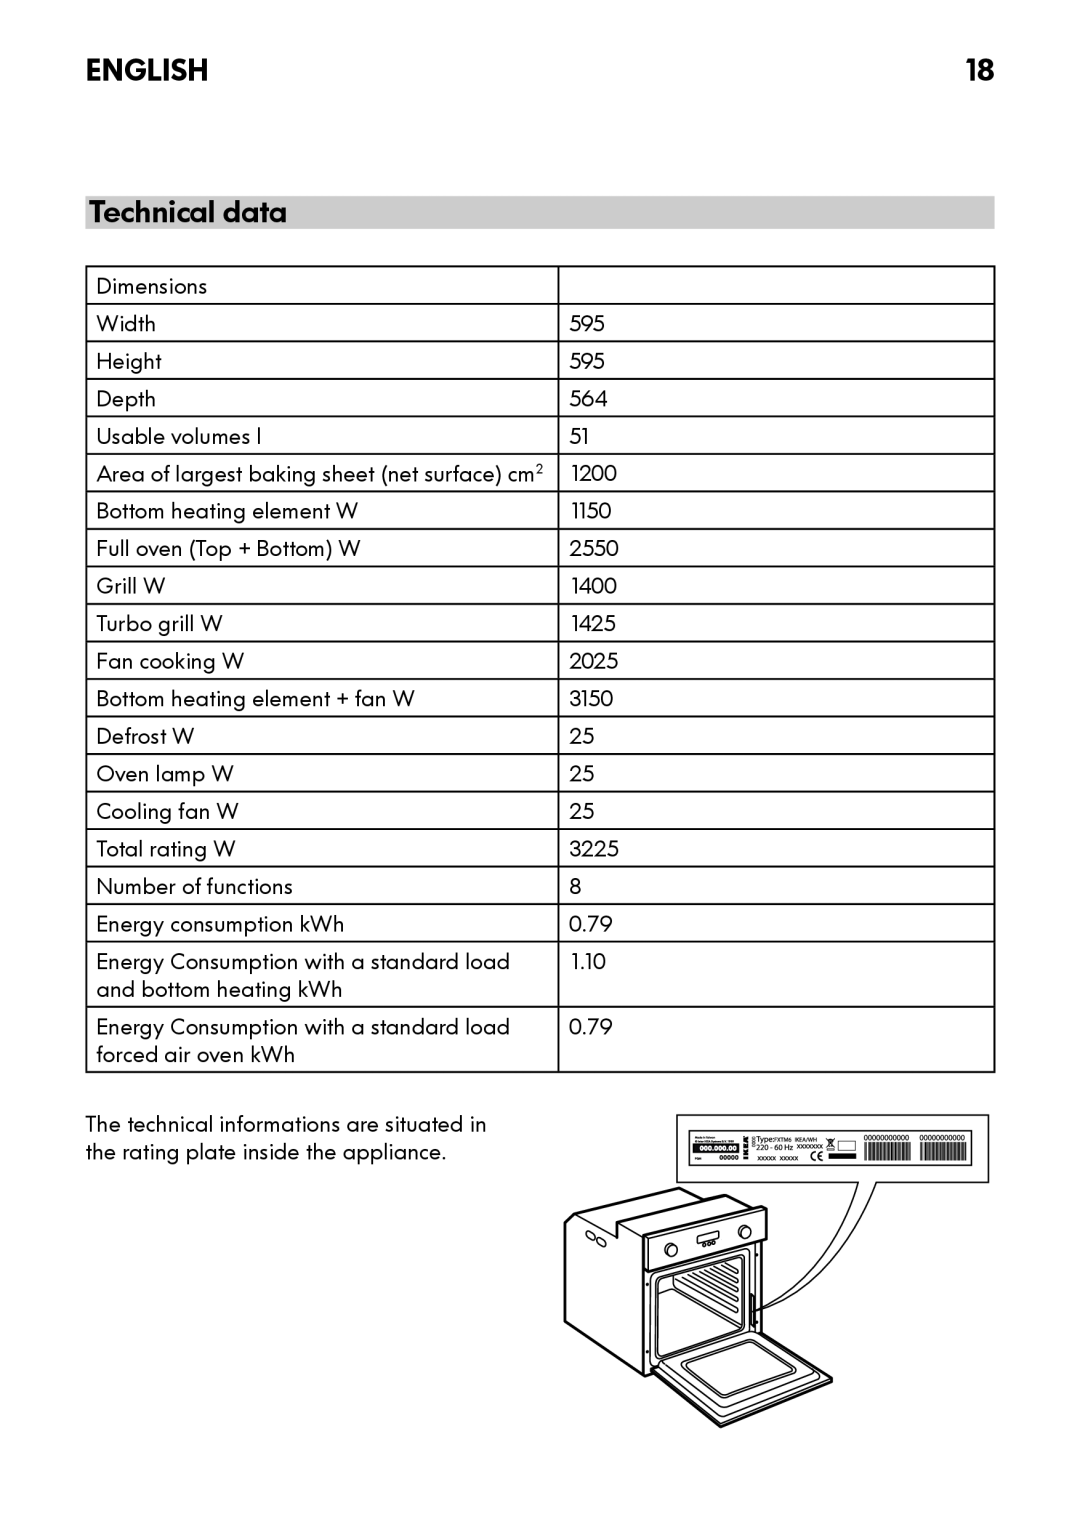 IKEA OV8 manual Technical data, English 